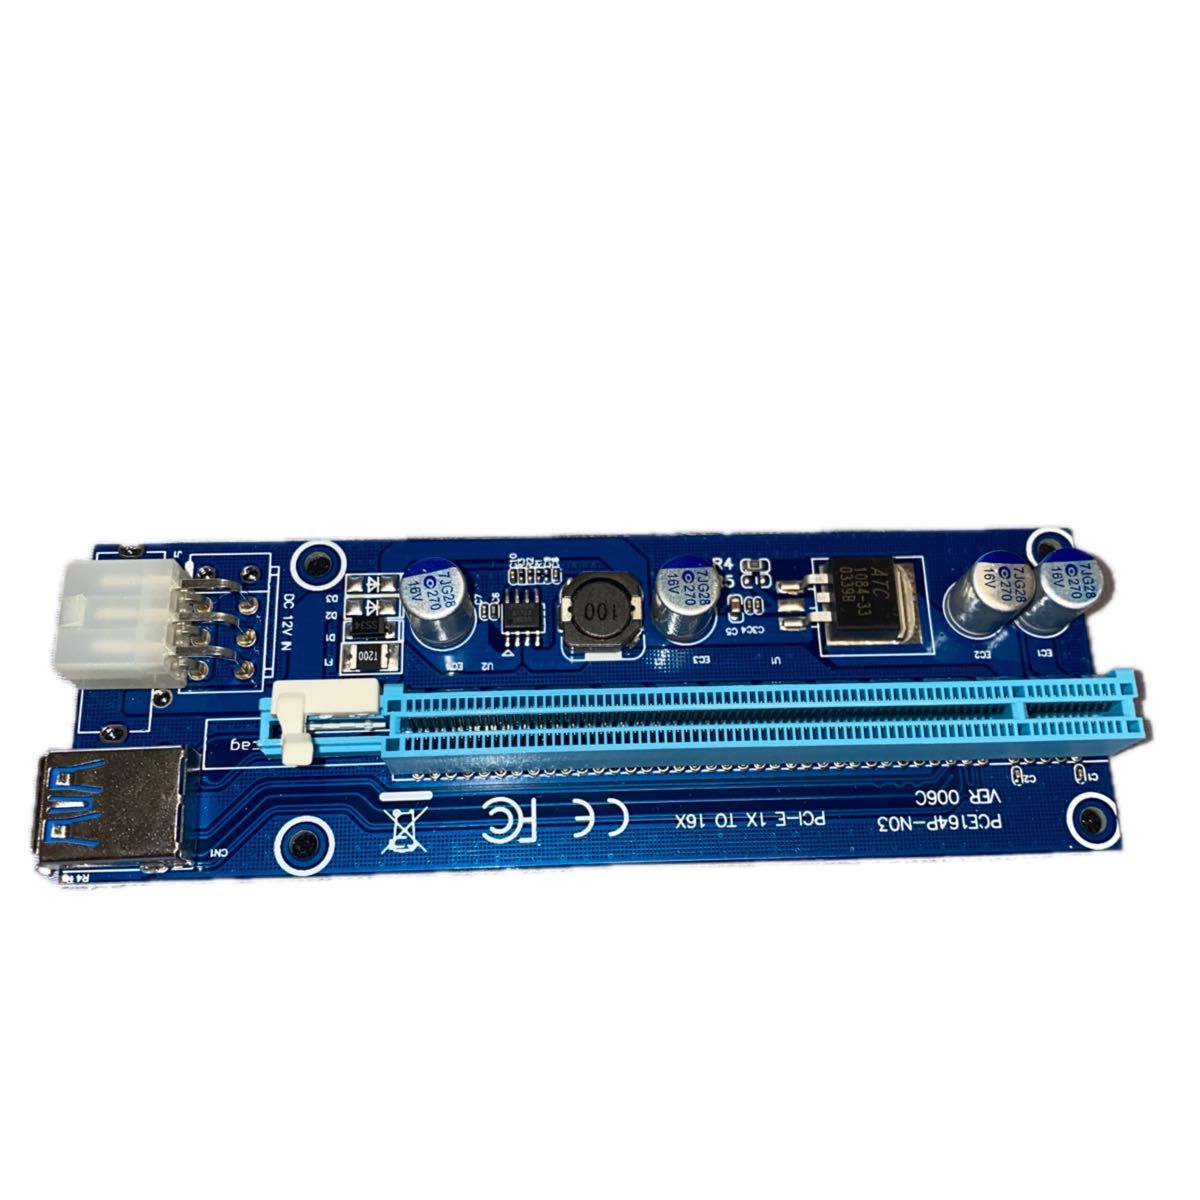 PCI-E 1x - 16x エクステンダーライザーカードアダプタ +電源ケーブル 20cm+USB 3.0延長ケーブル 60cm